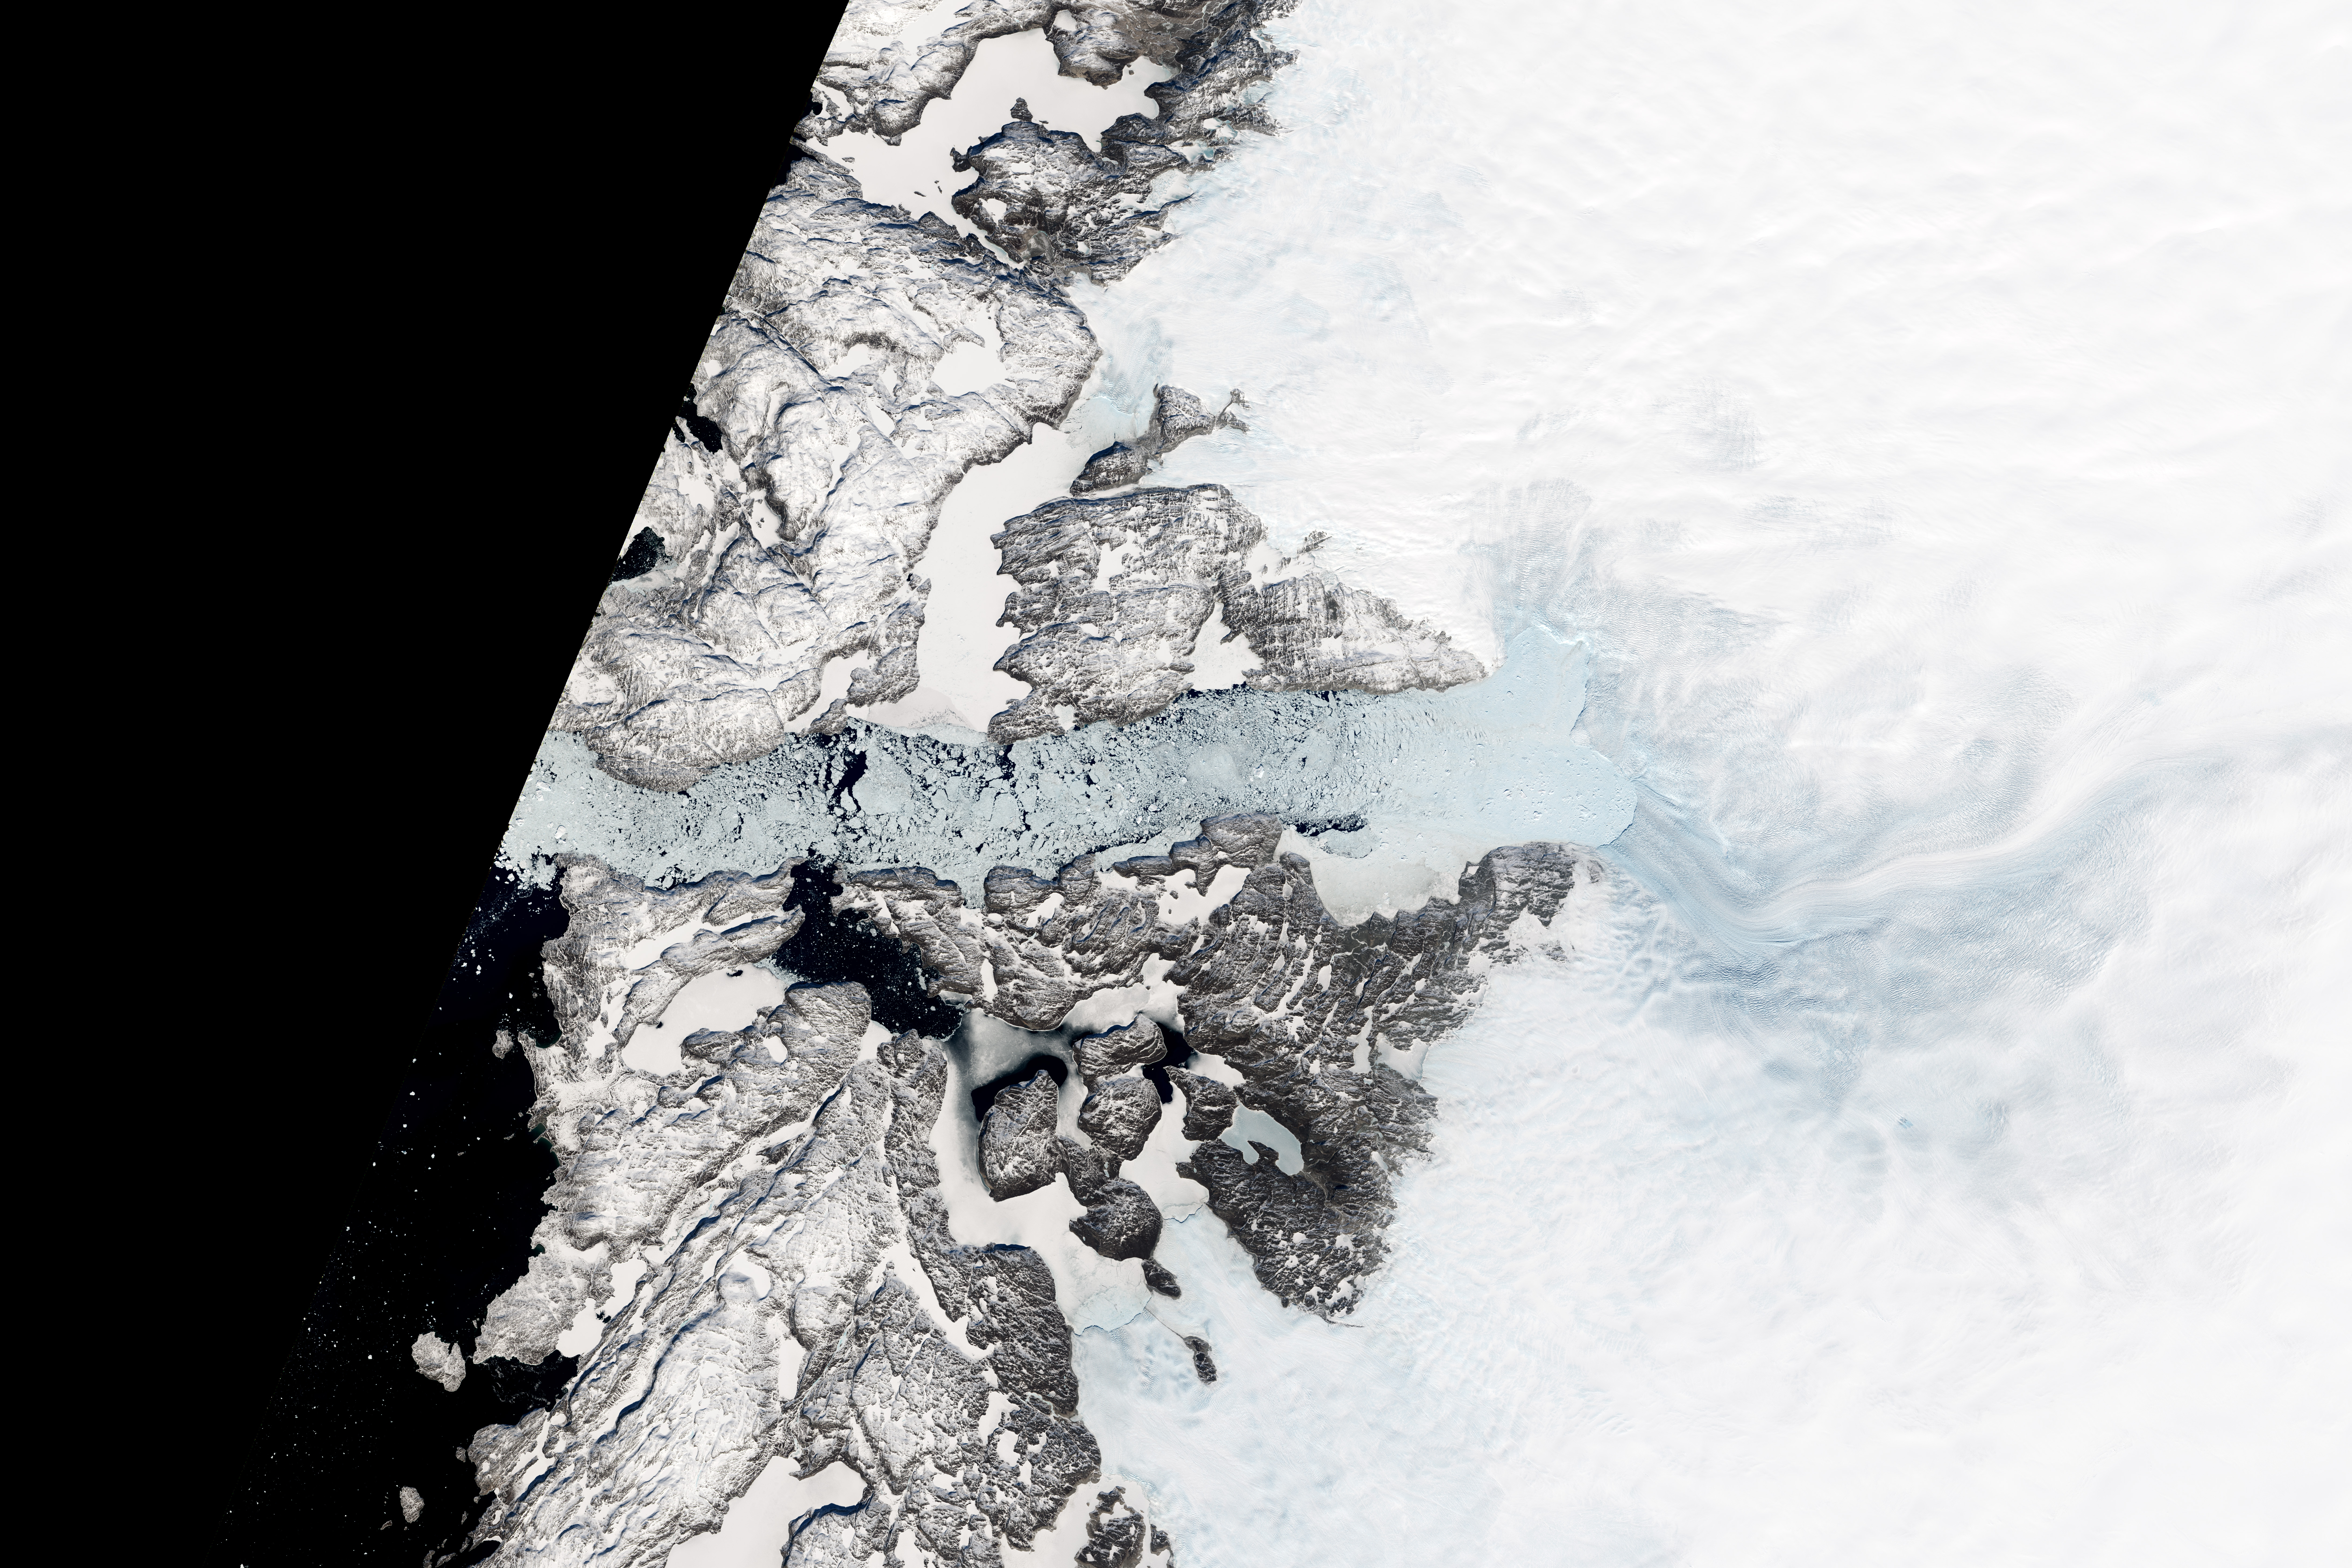 Retreat of Jakobshavn Glacier, Greenland - related image preview